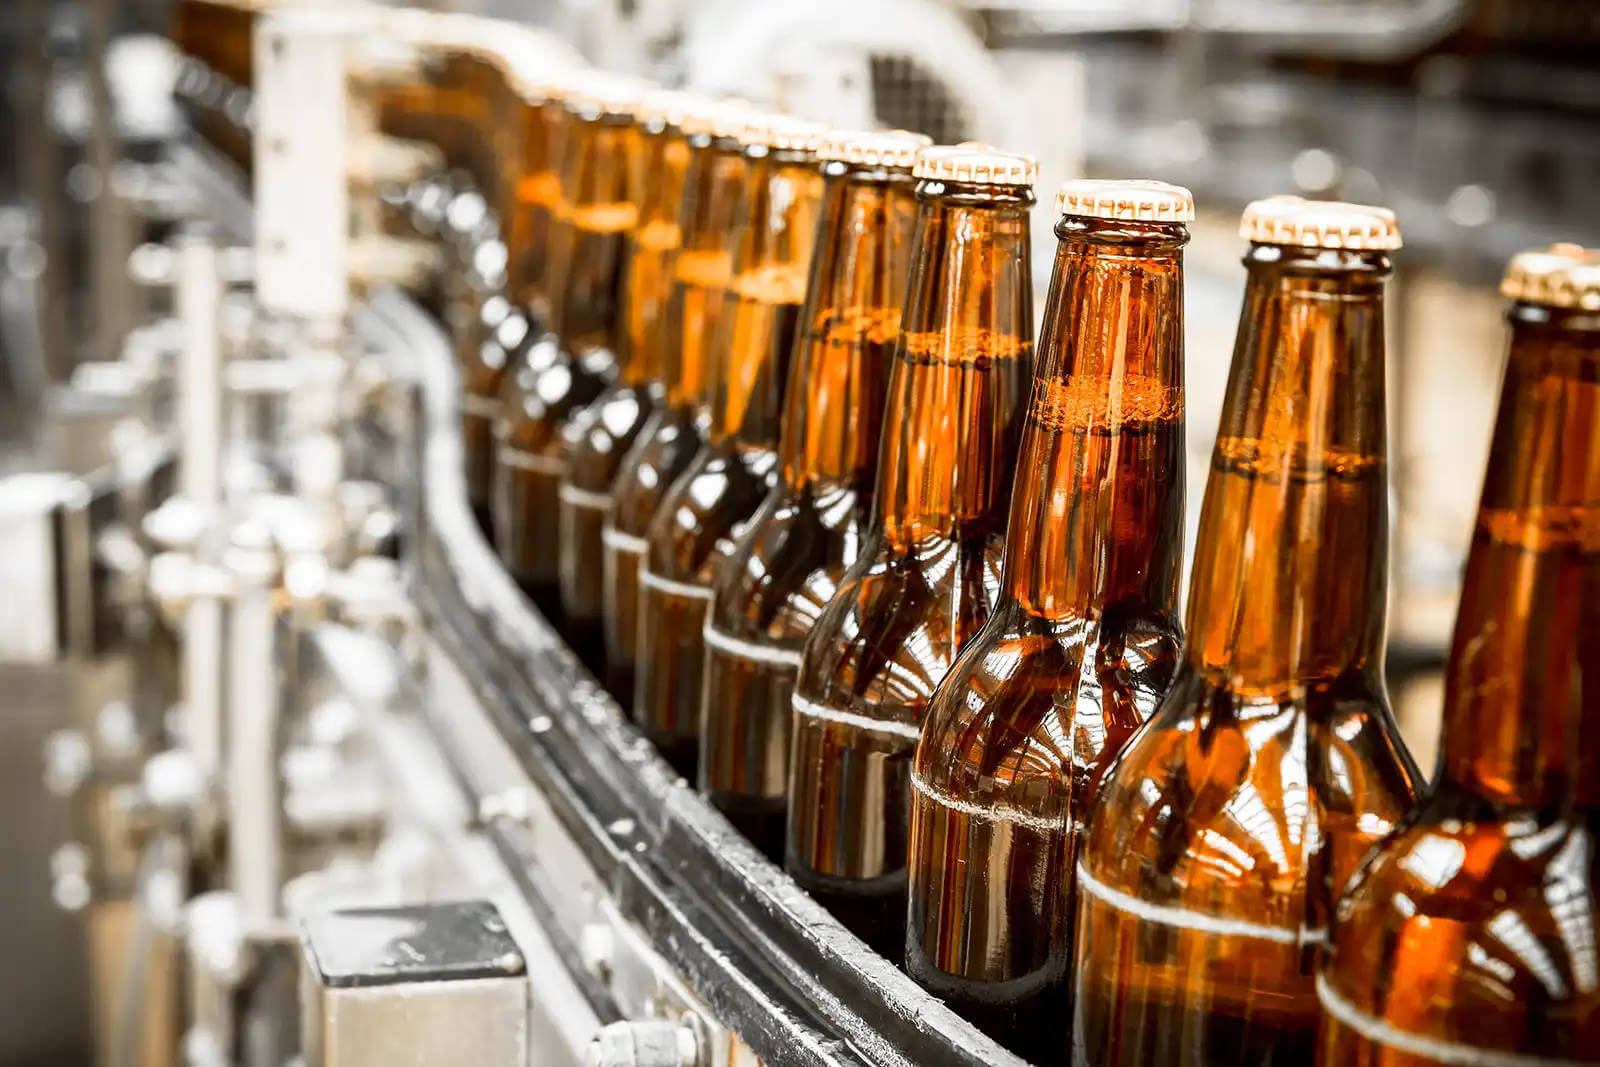 Barna üveges italok haladnak végig az ipari gyártósoron.